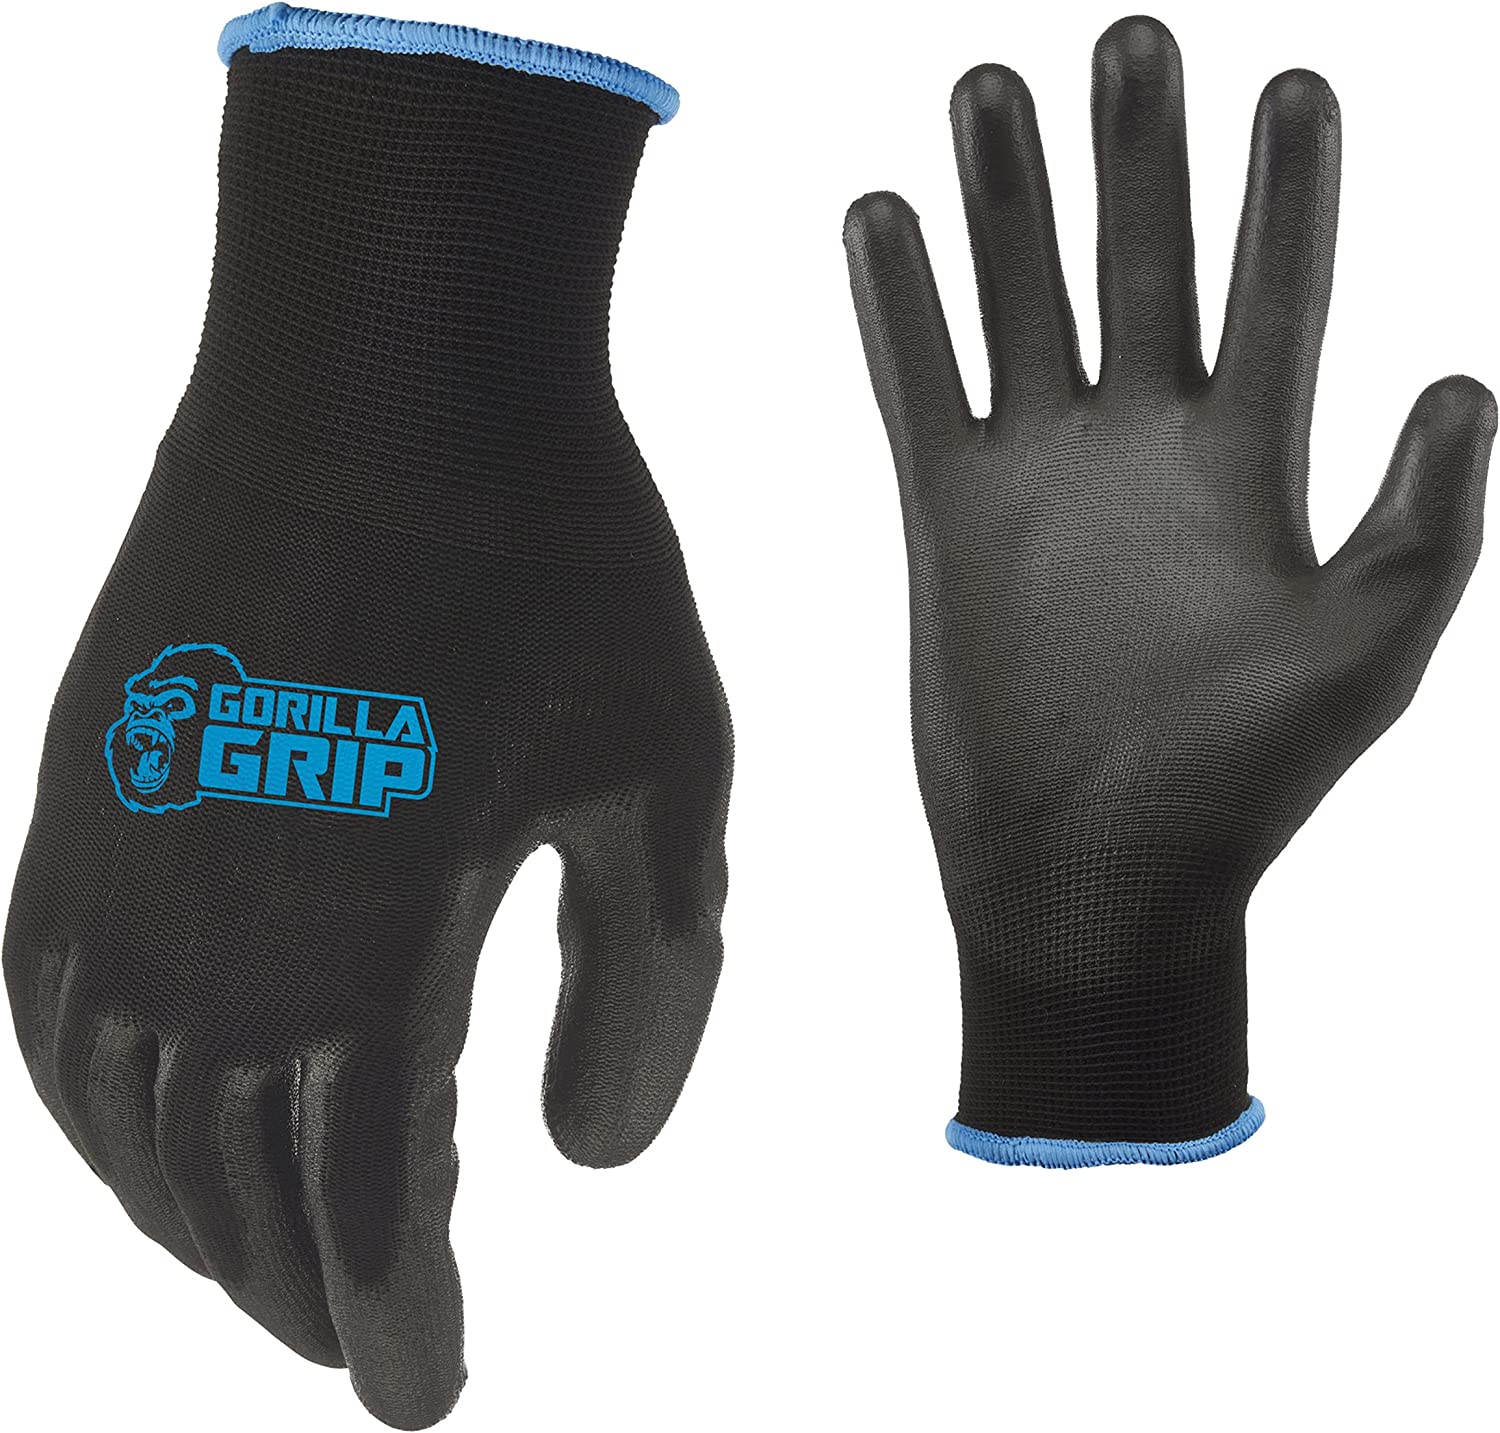 gorilla grip grey slip resistant all purpose work gloves